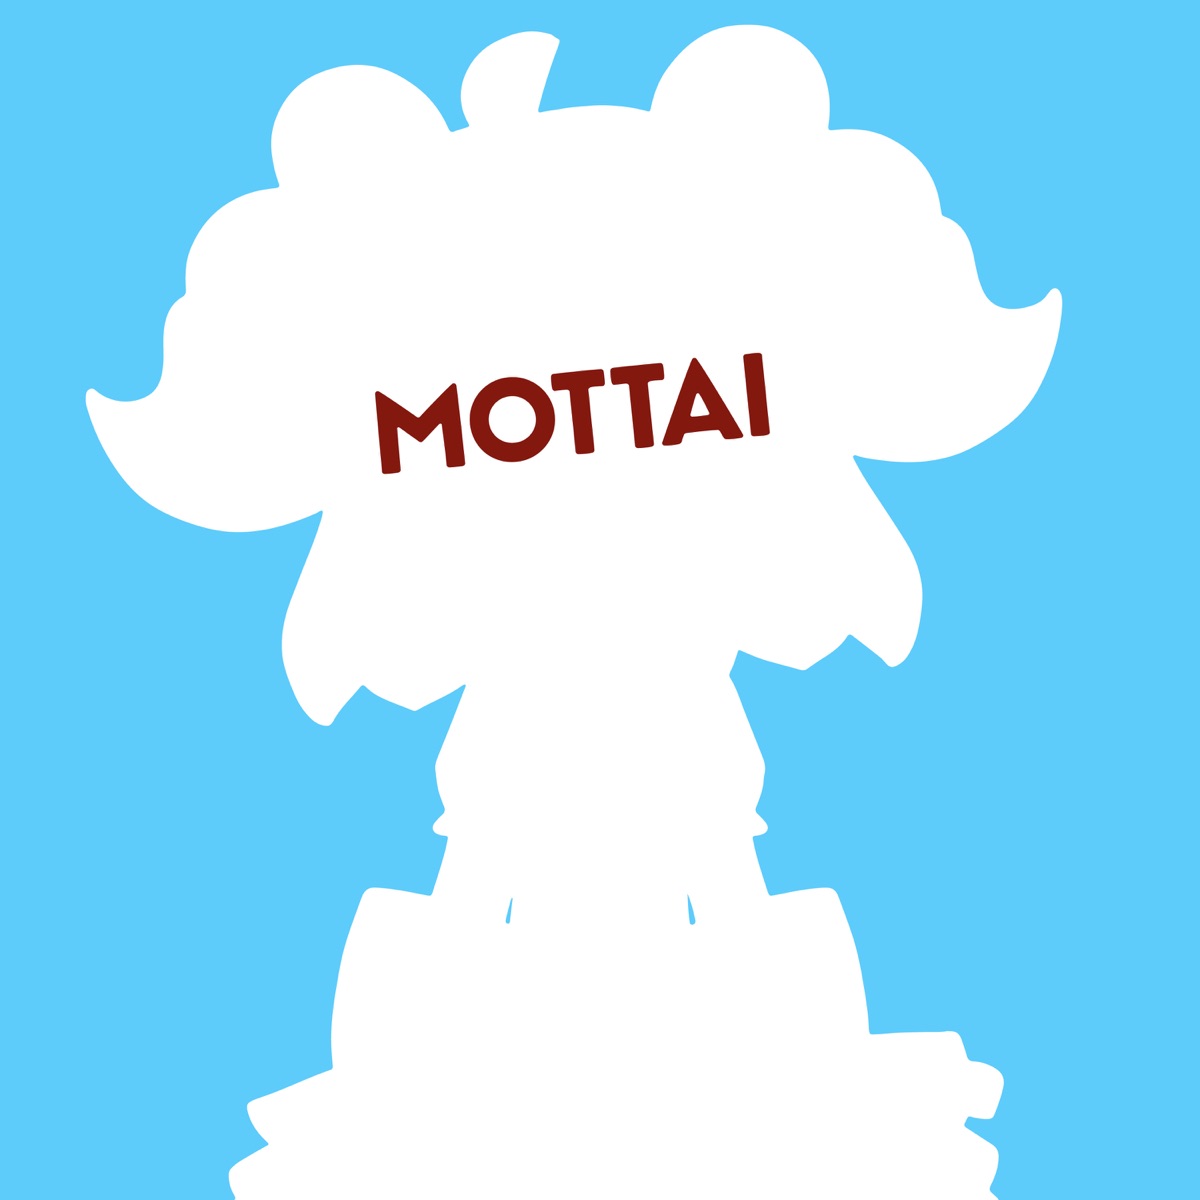 『P丸様。 - MOTTAI 歌詞』収録の『MOTTAI』ジャケット